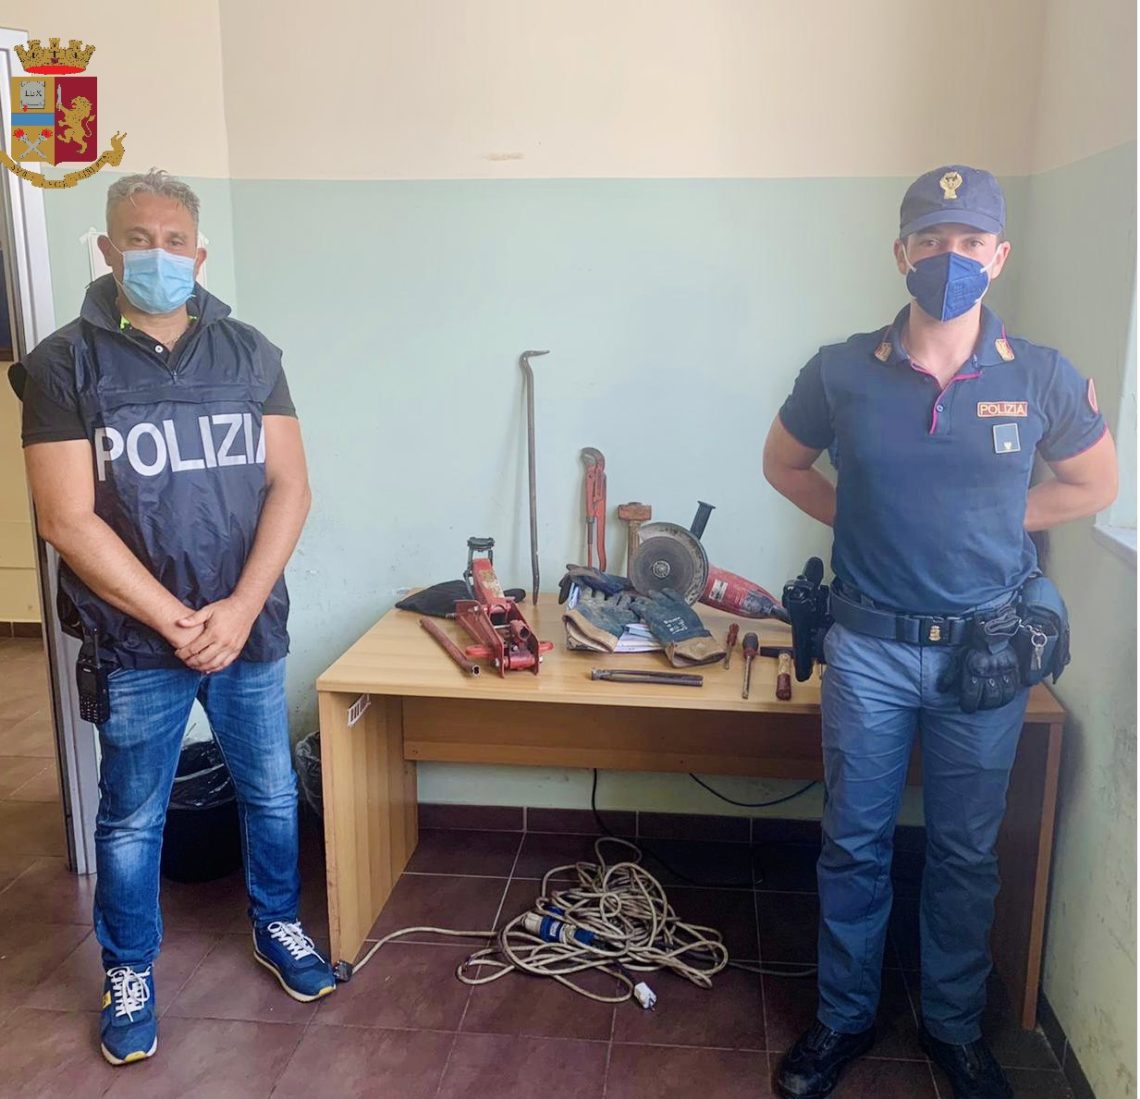 Messina: La Polizia arresta ladri sorpresi all’interno di un’isola ecologica